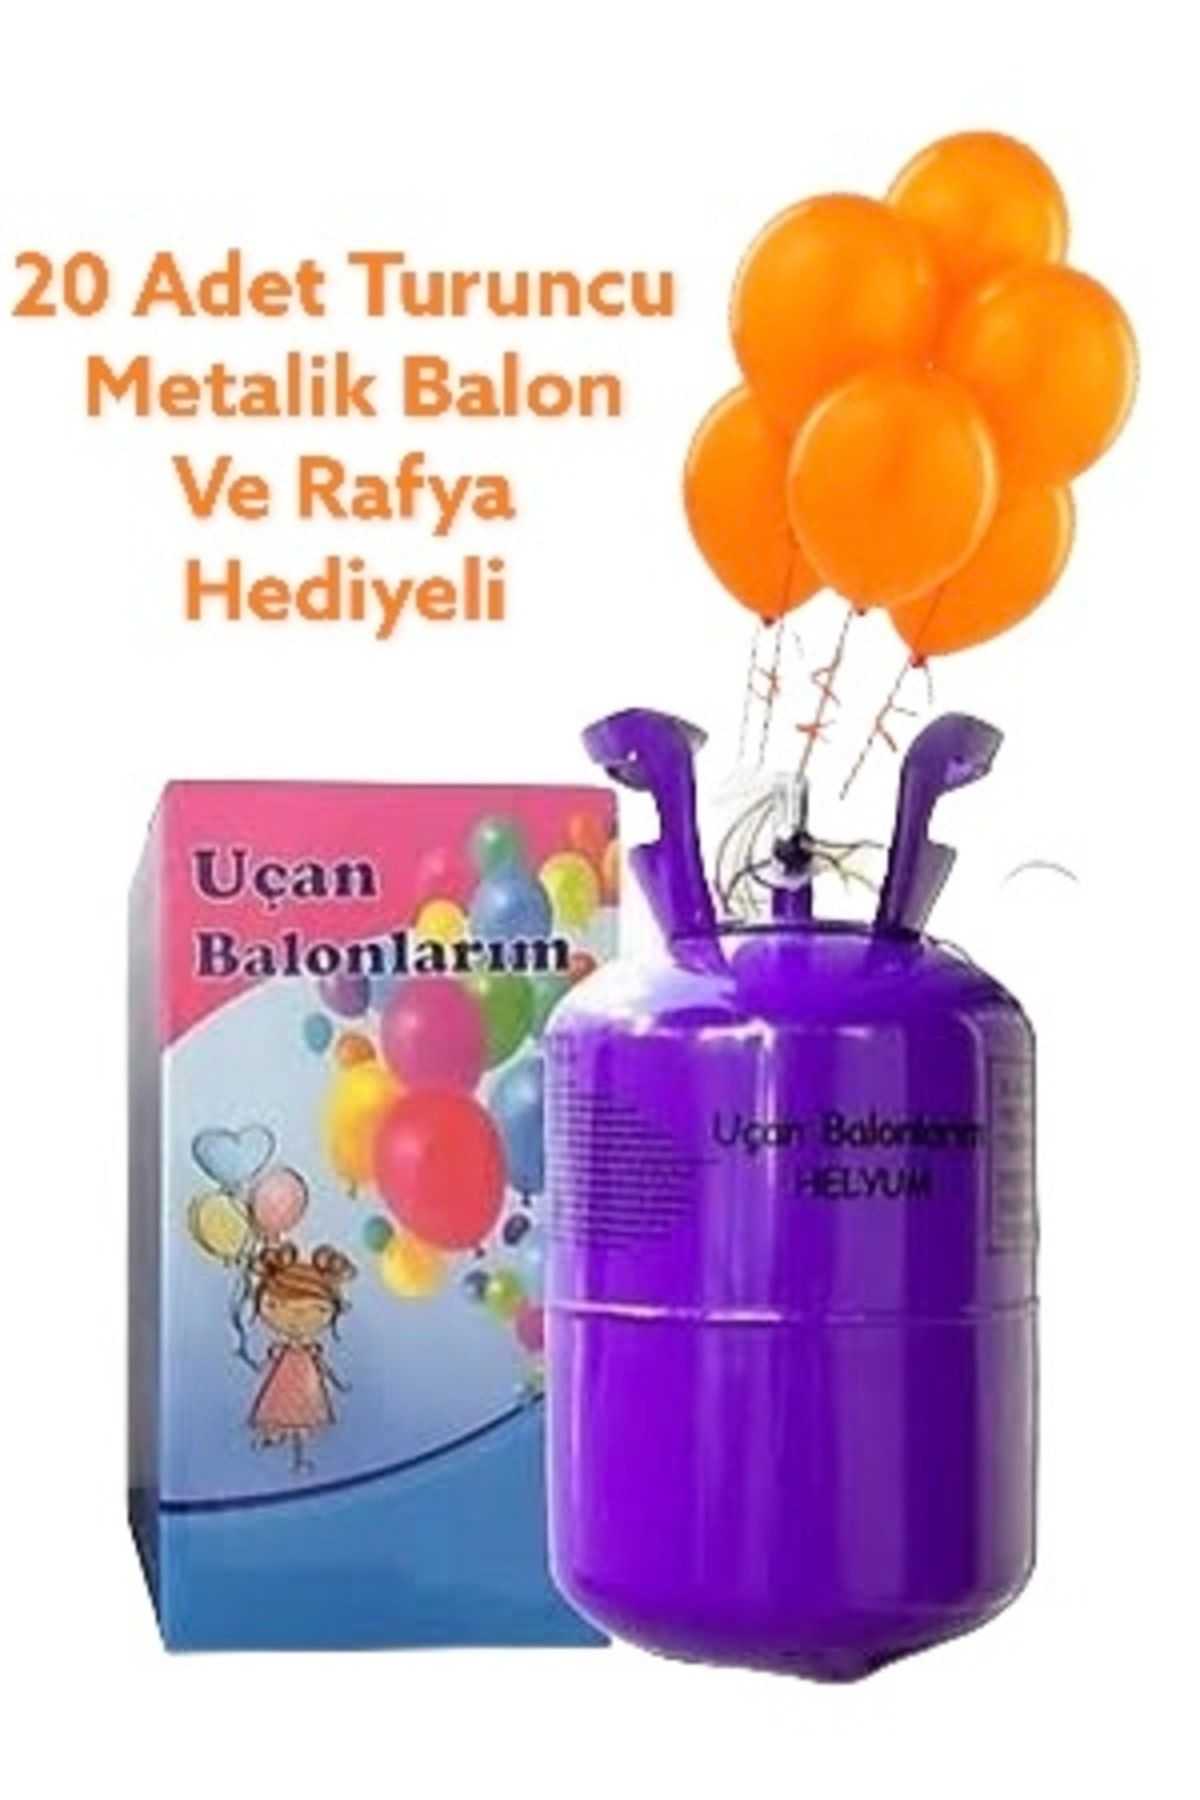 Kahramanlar Dünyası Helyum Gazı Kullan At Helyum Tüpü (20 Adet Turuncu Metalik Balon Ve Rafya Hediyeli)